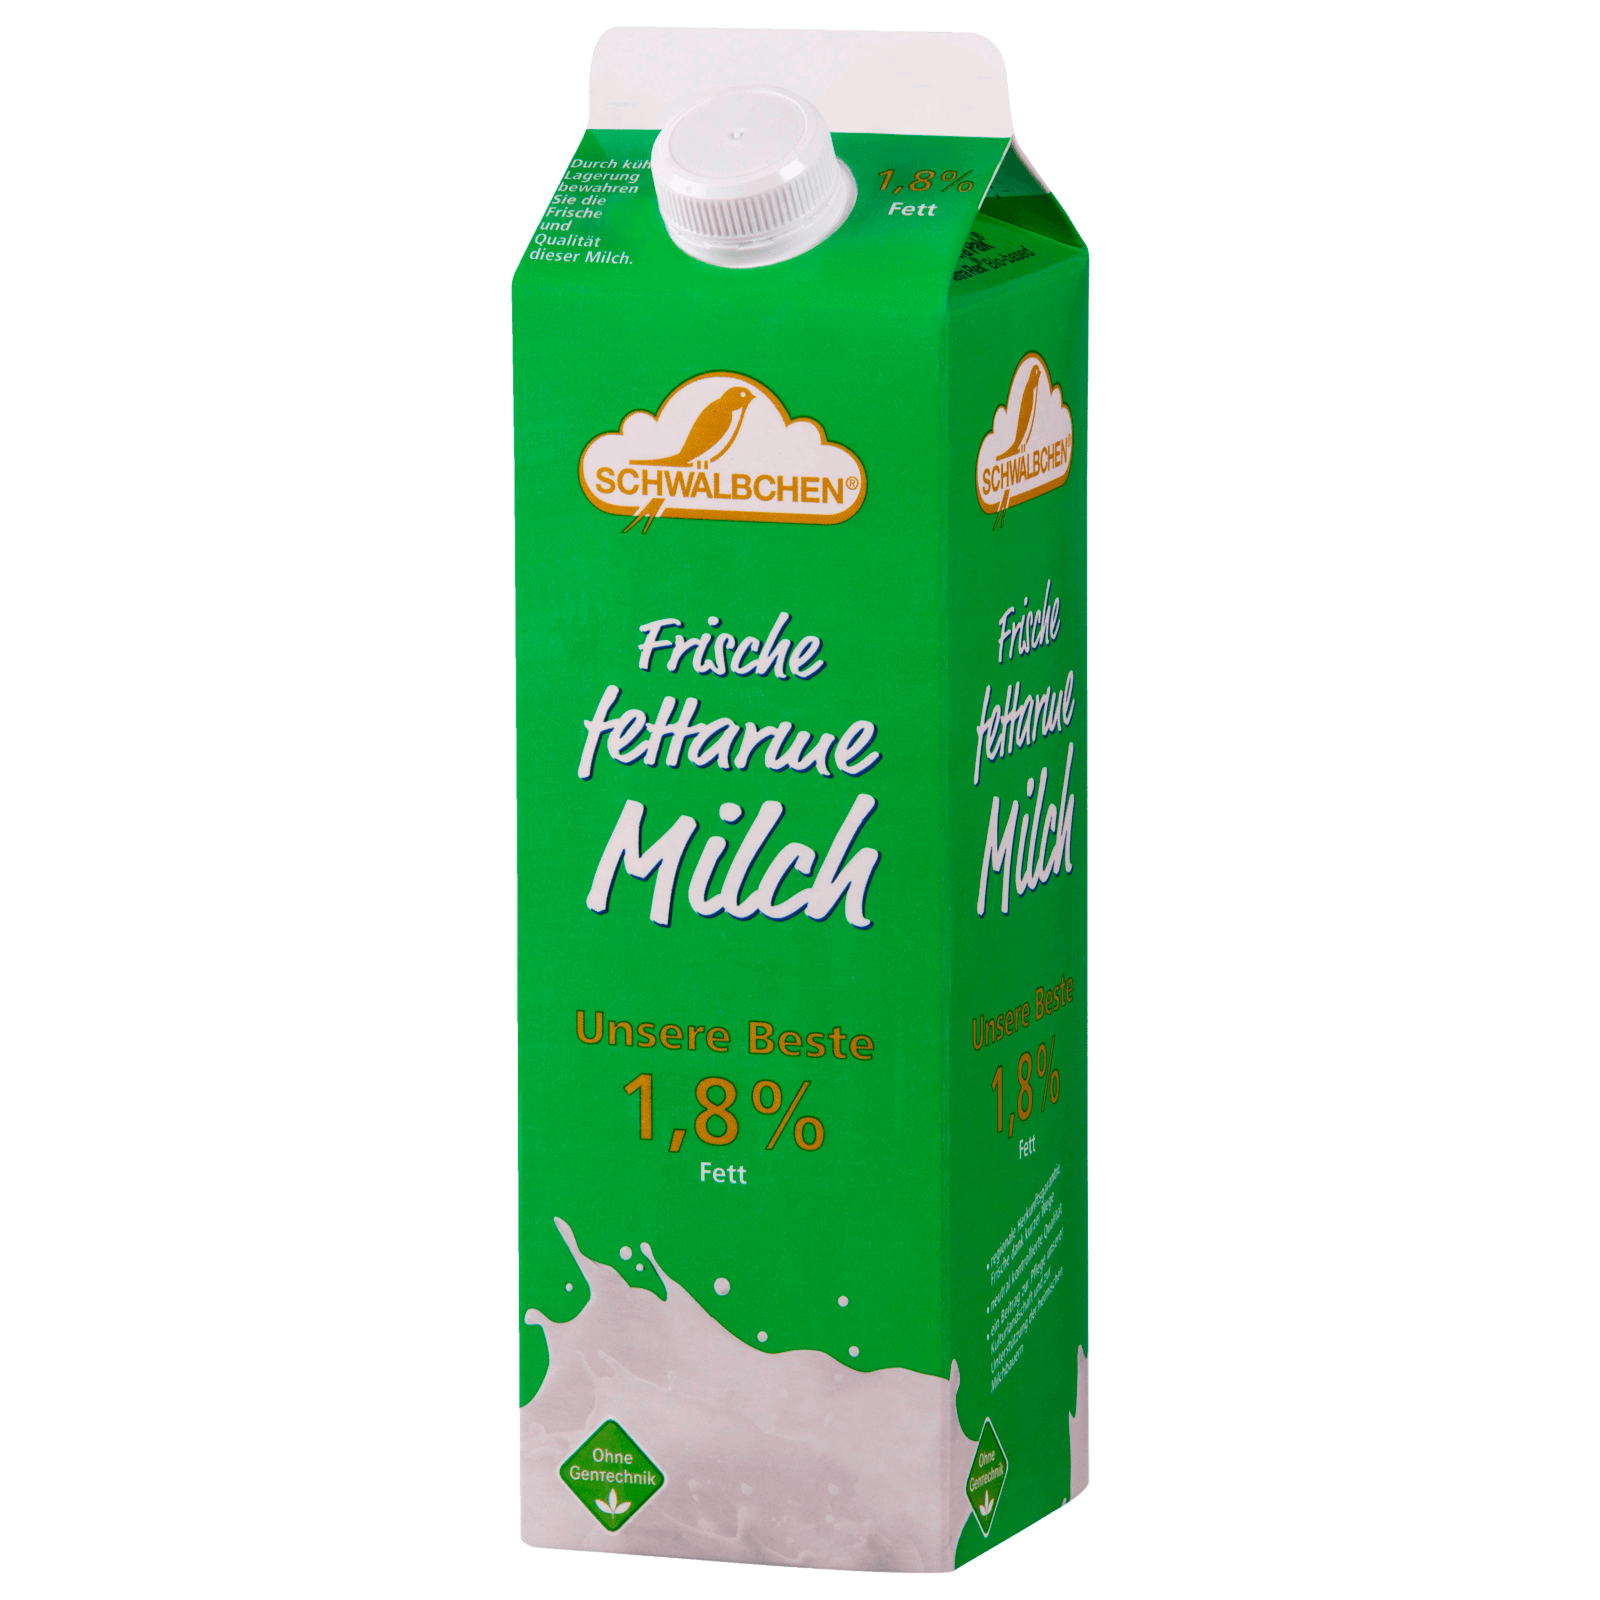 Schwälbchen Frische fettarme Milch 1,8% 1l  für 1.59 EUR